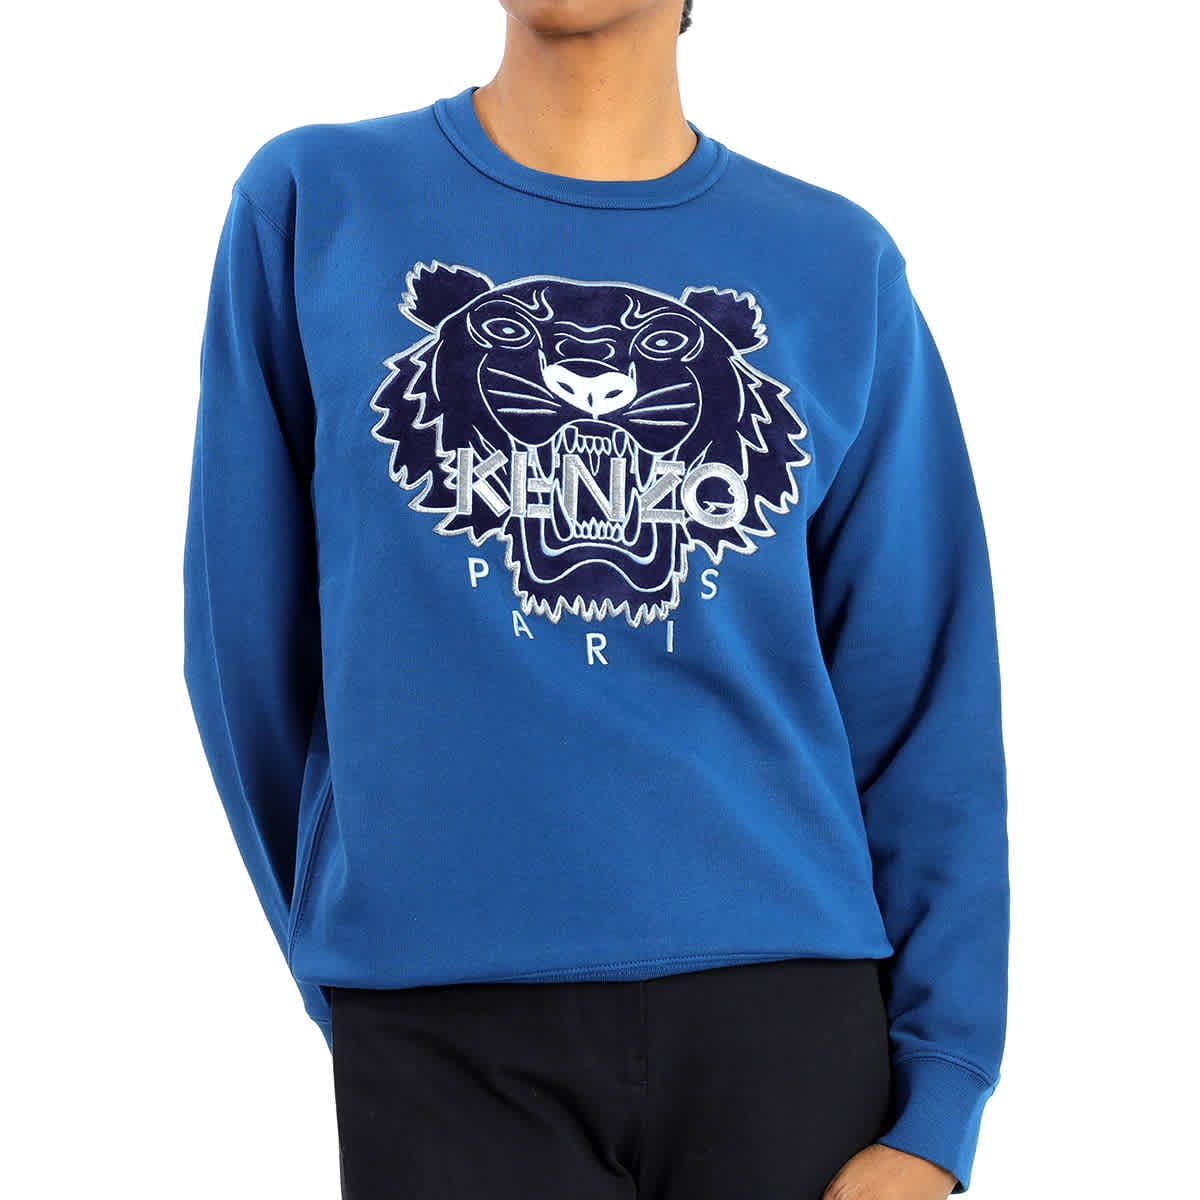 Kenzo tiger logo sweat hoodie